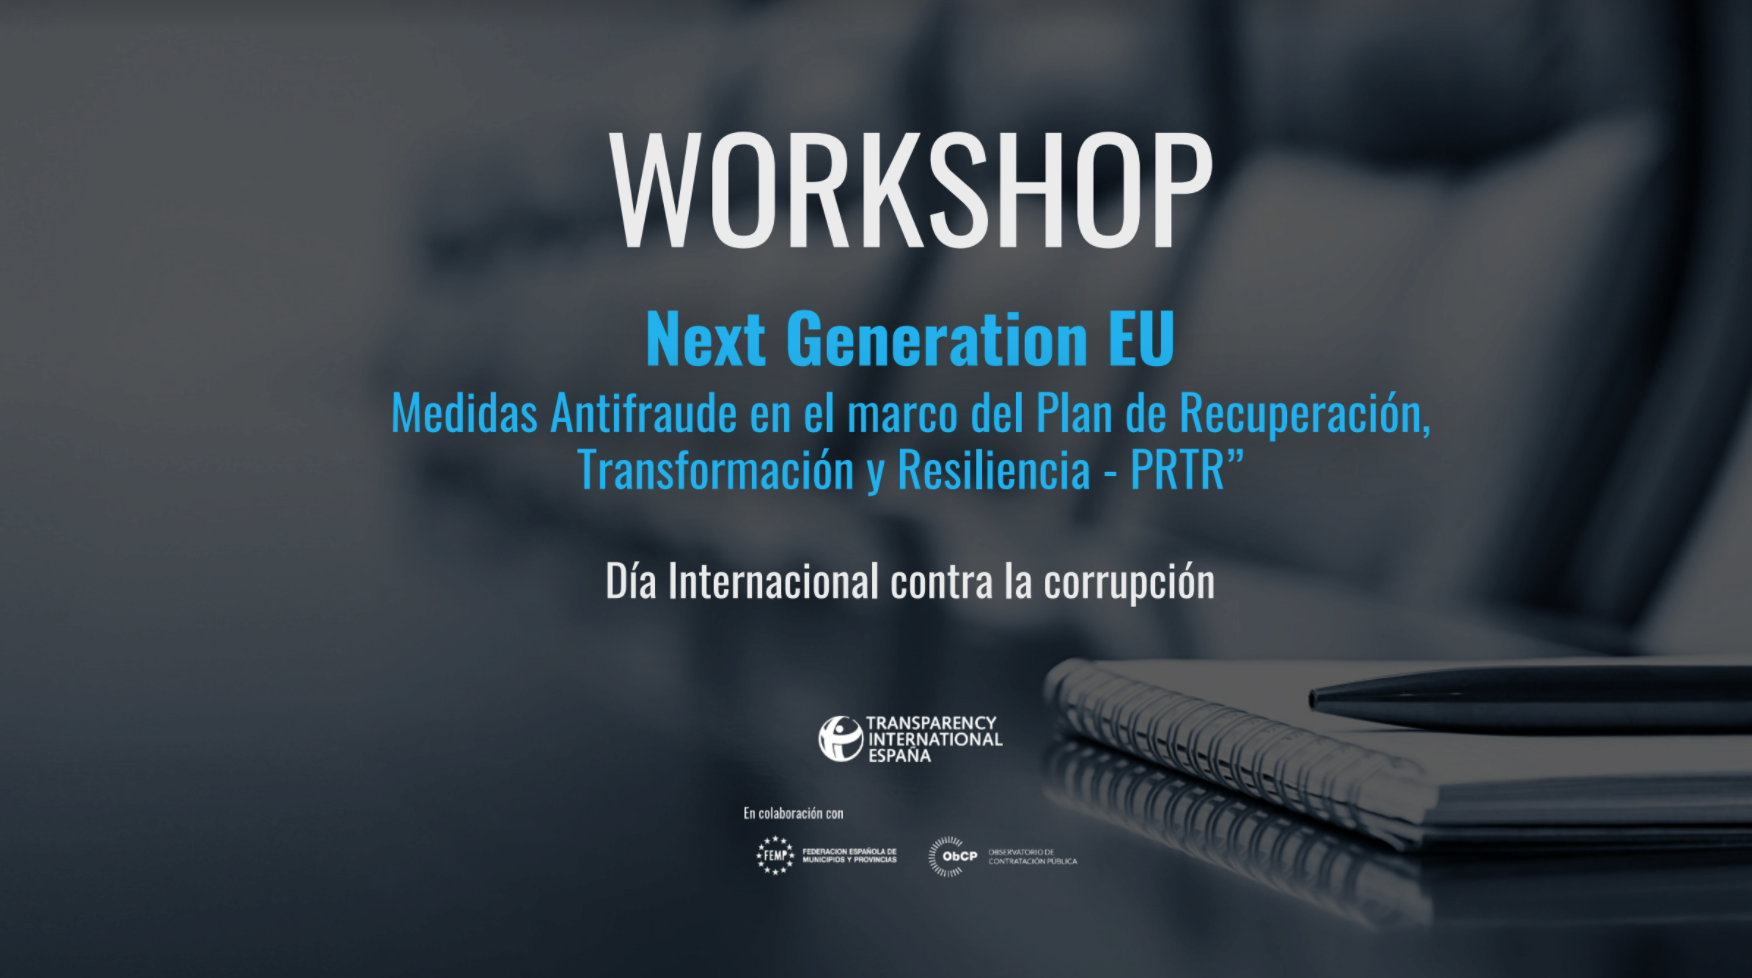 Workshop Next Generation EU - Medidas antifrauda en el marco del Plan de Recuperación, Transformación y Resiliencia - PRTR